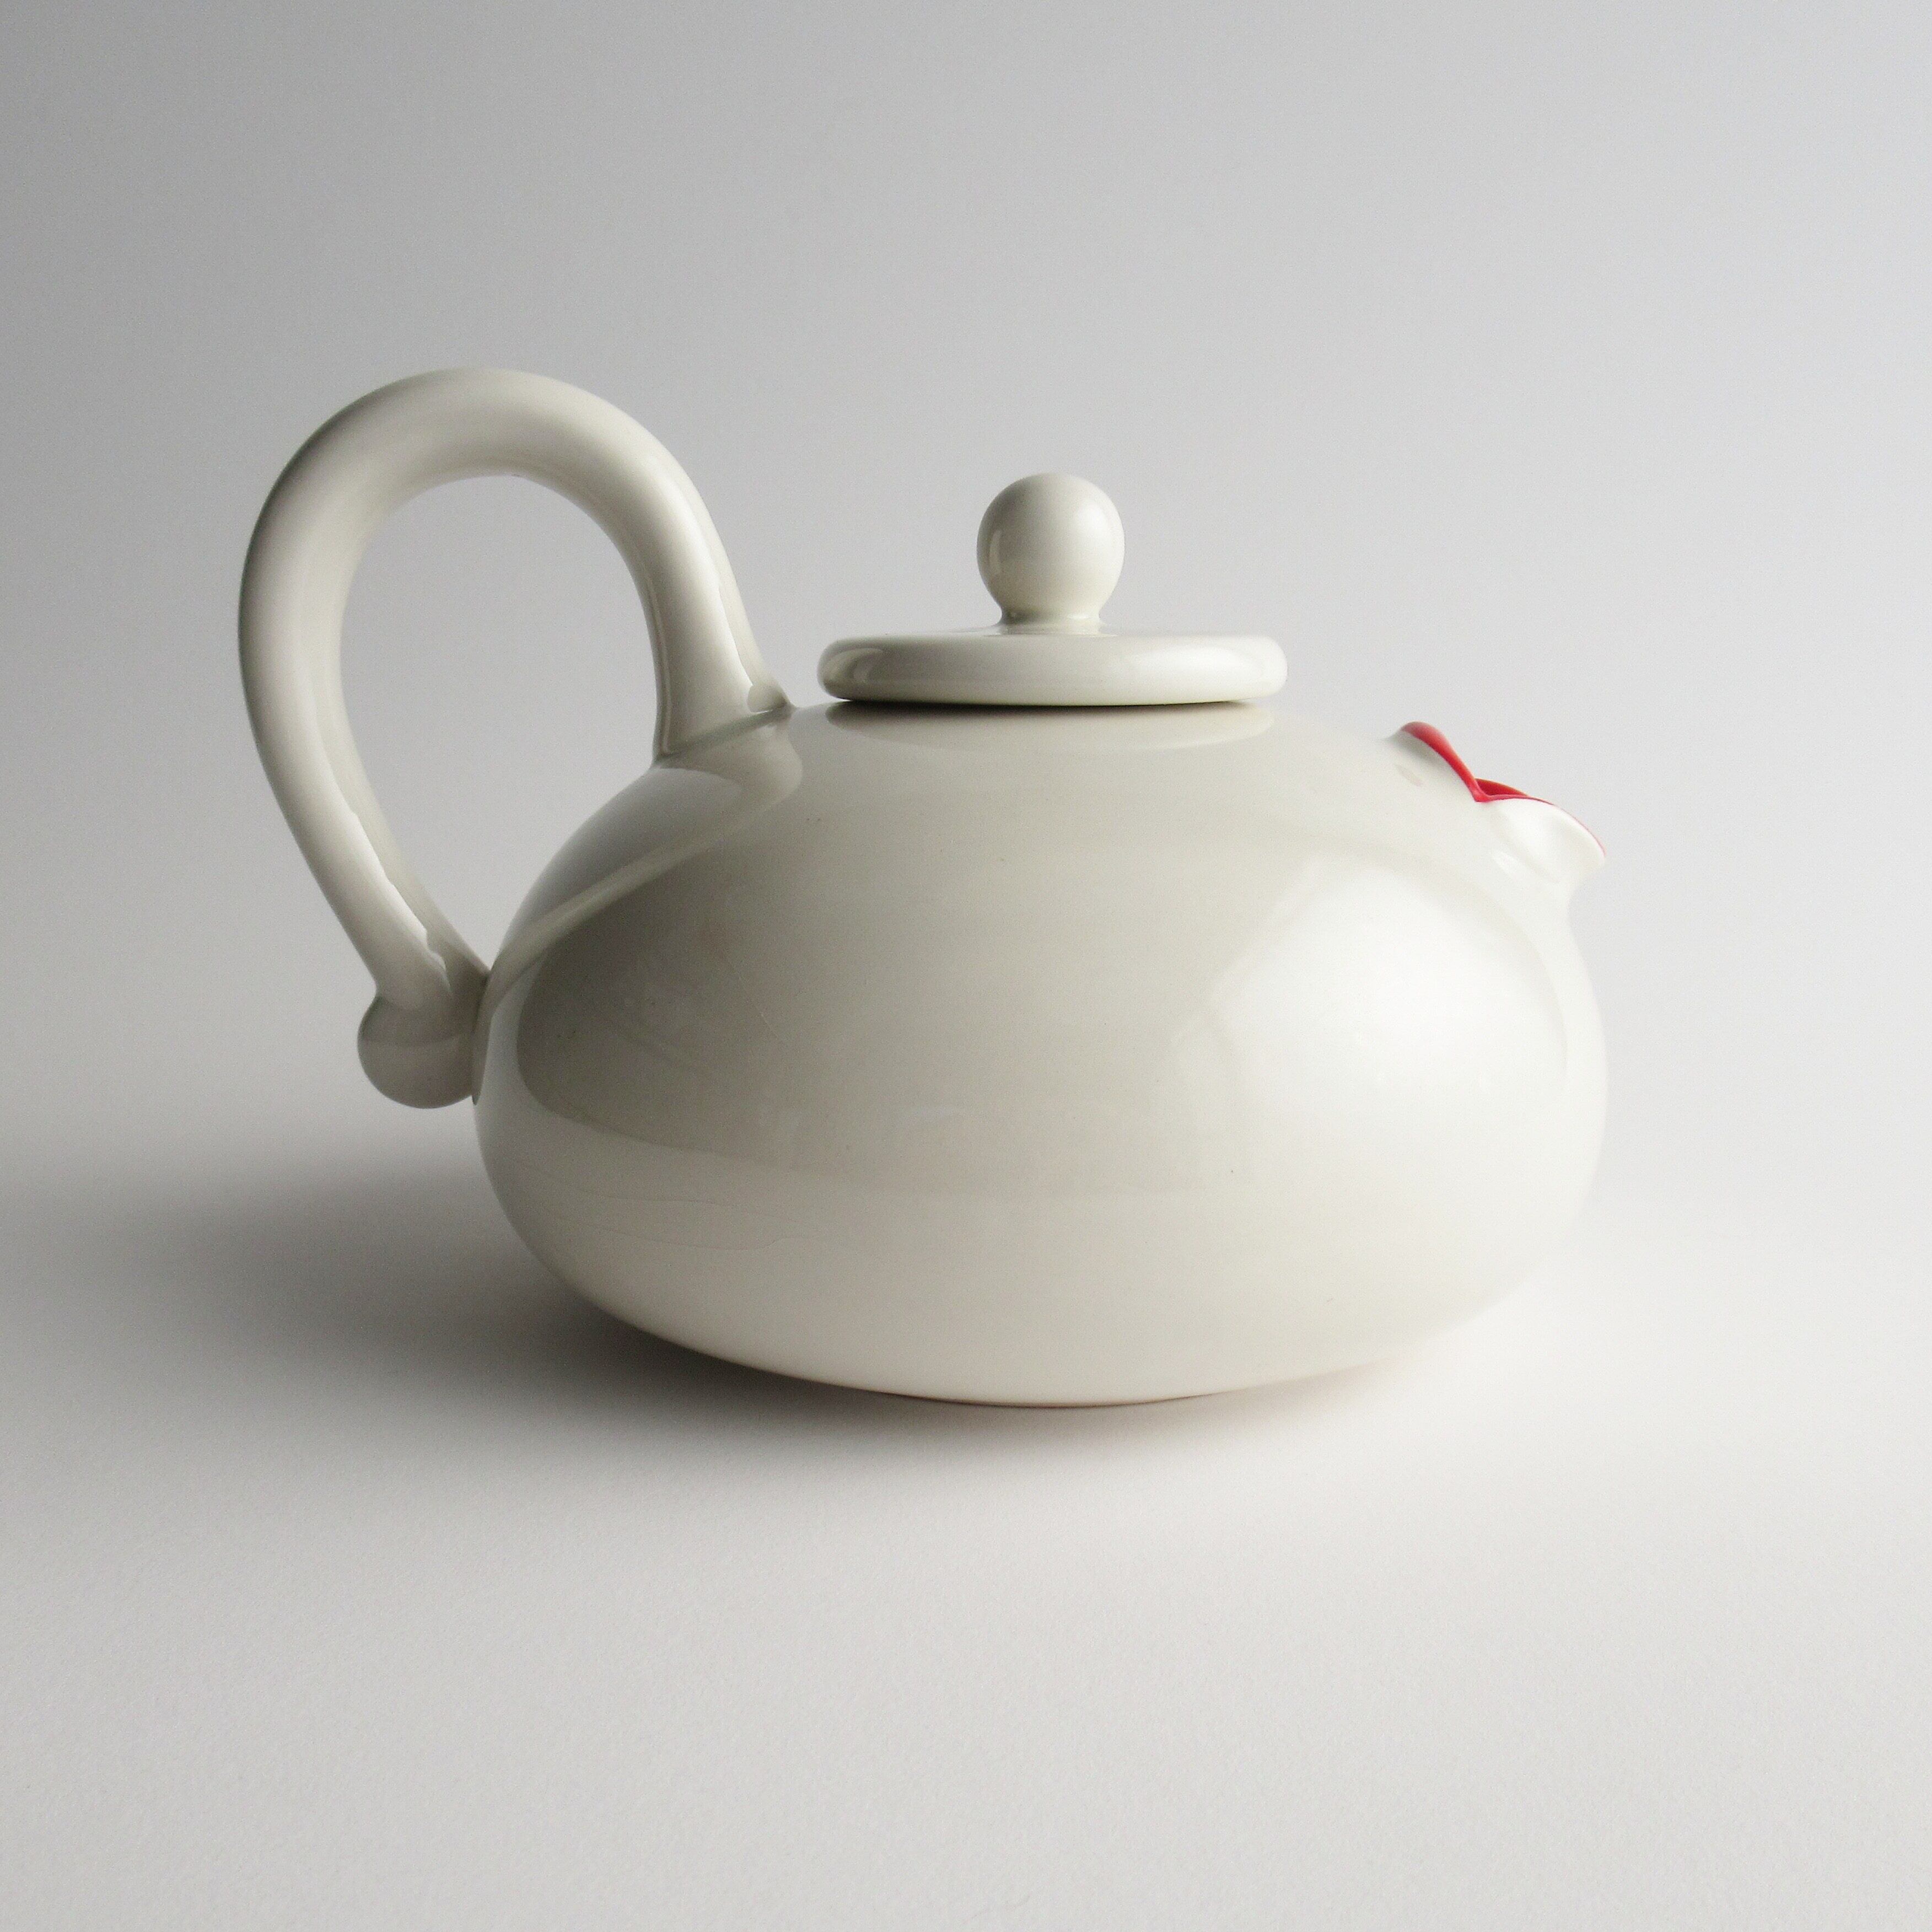 ティーポット   マリリンモンロー  lip service teapot